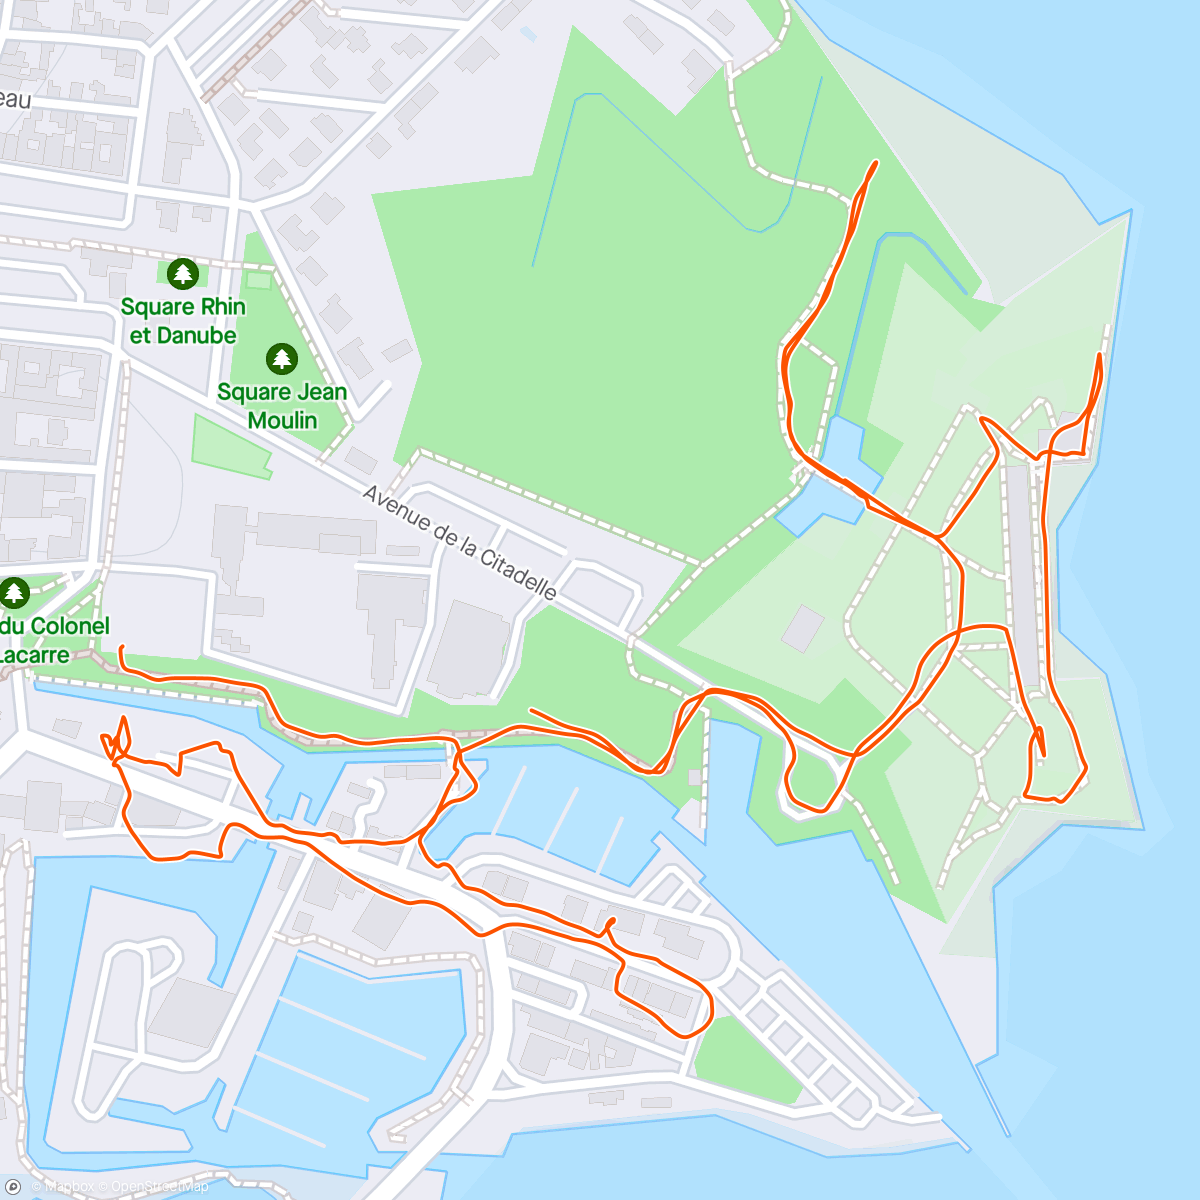 Mappa dell'attività Marche dans l'île et visite de la citadelle